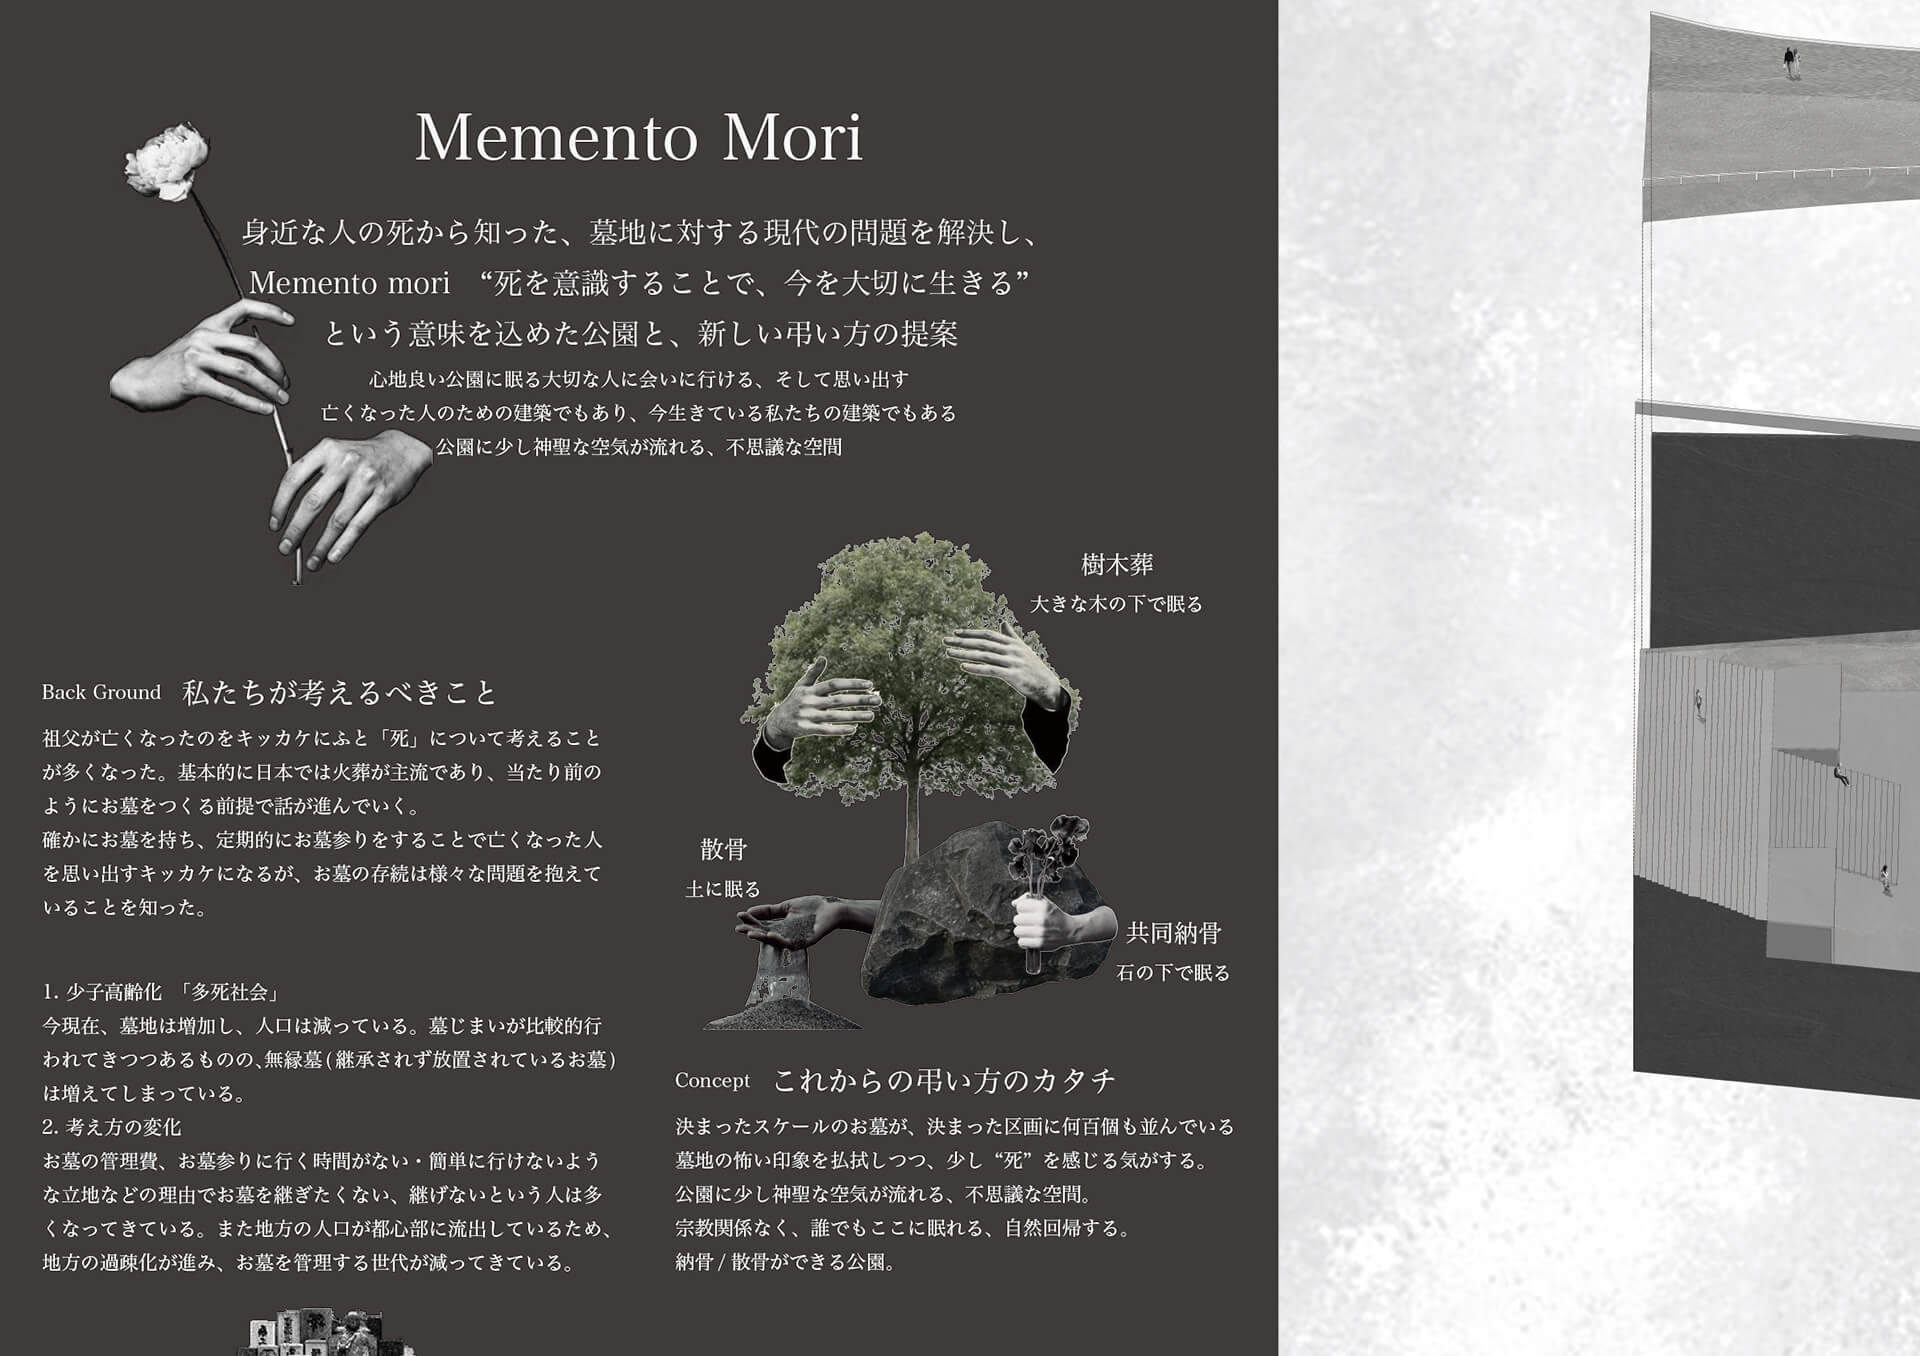 Memento Mori 身近な人の死から知った、墓地に対する現代の問題を解決し、Memento Mori "死を意識することで今を大切に生きることができる" という意味を込めた、公園と、新しい弔い方の提案-1